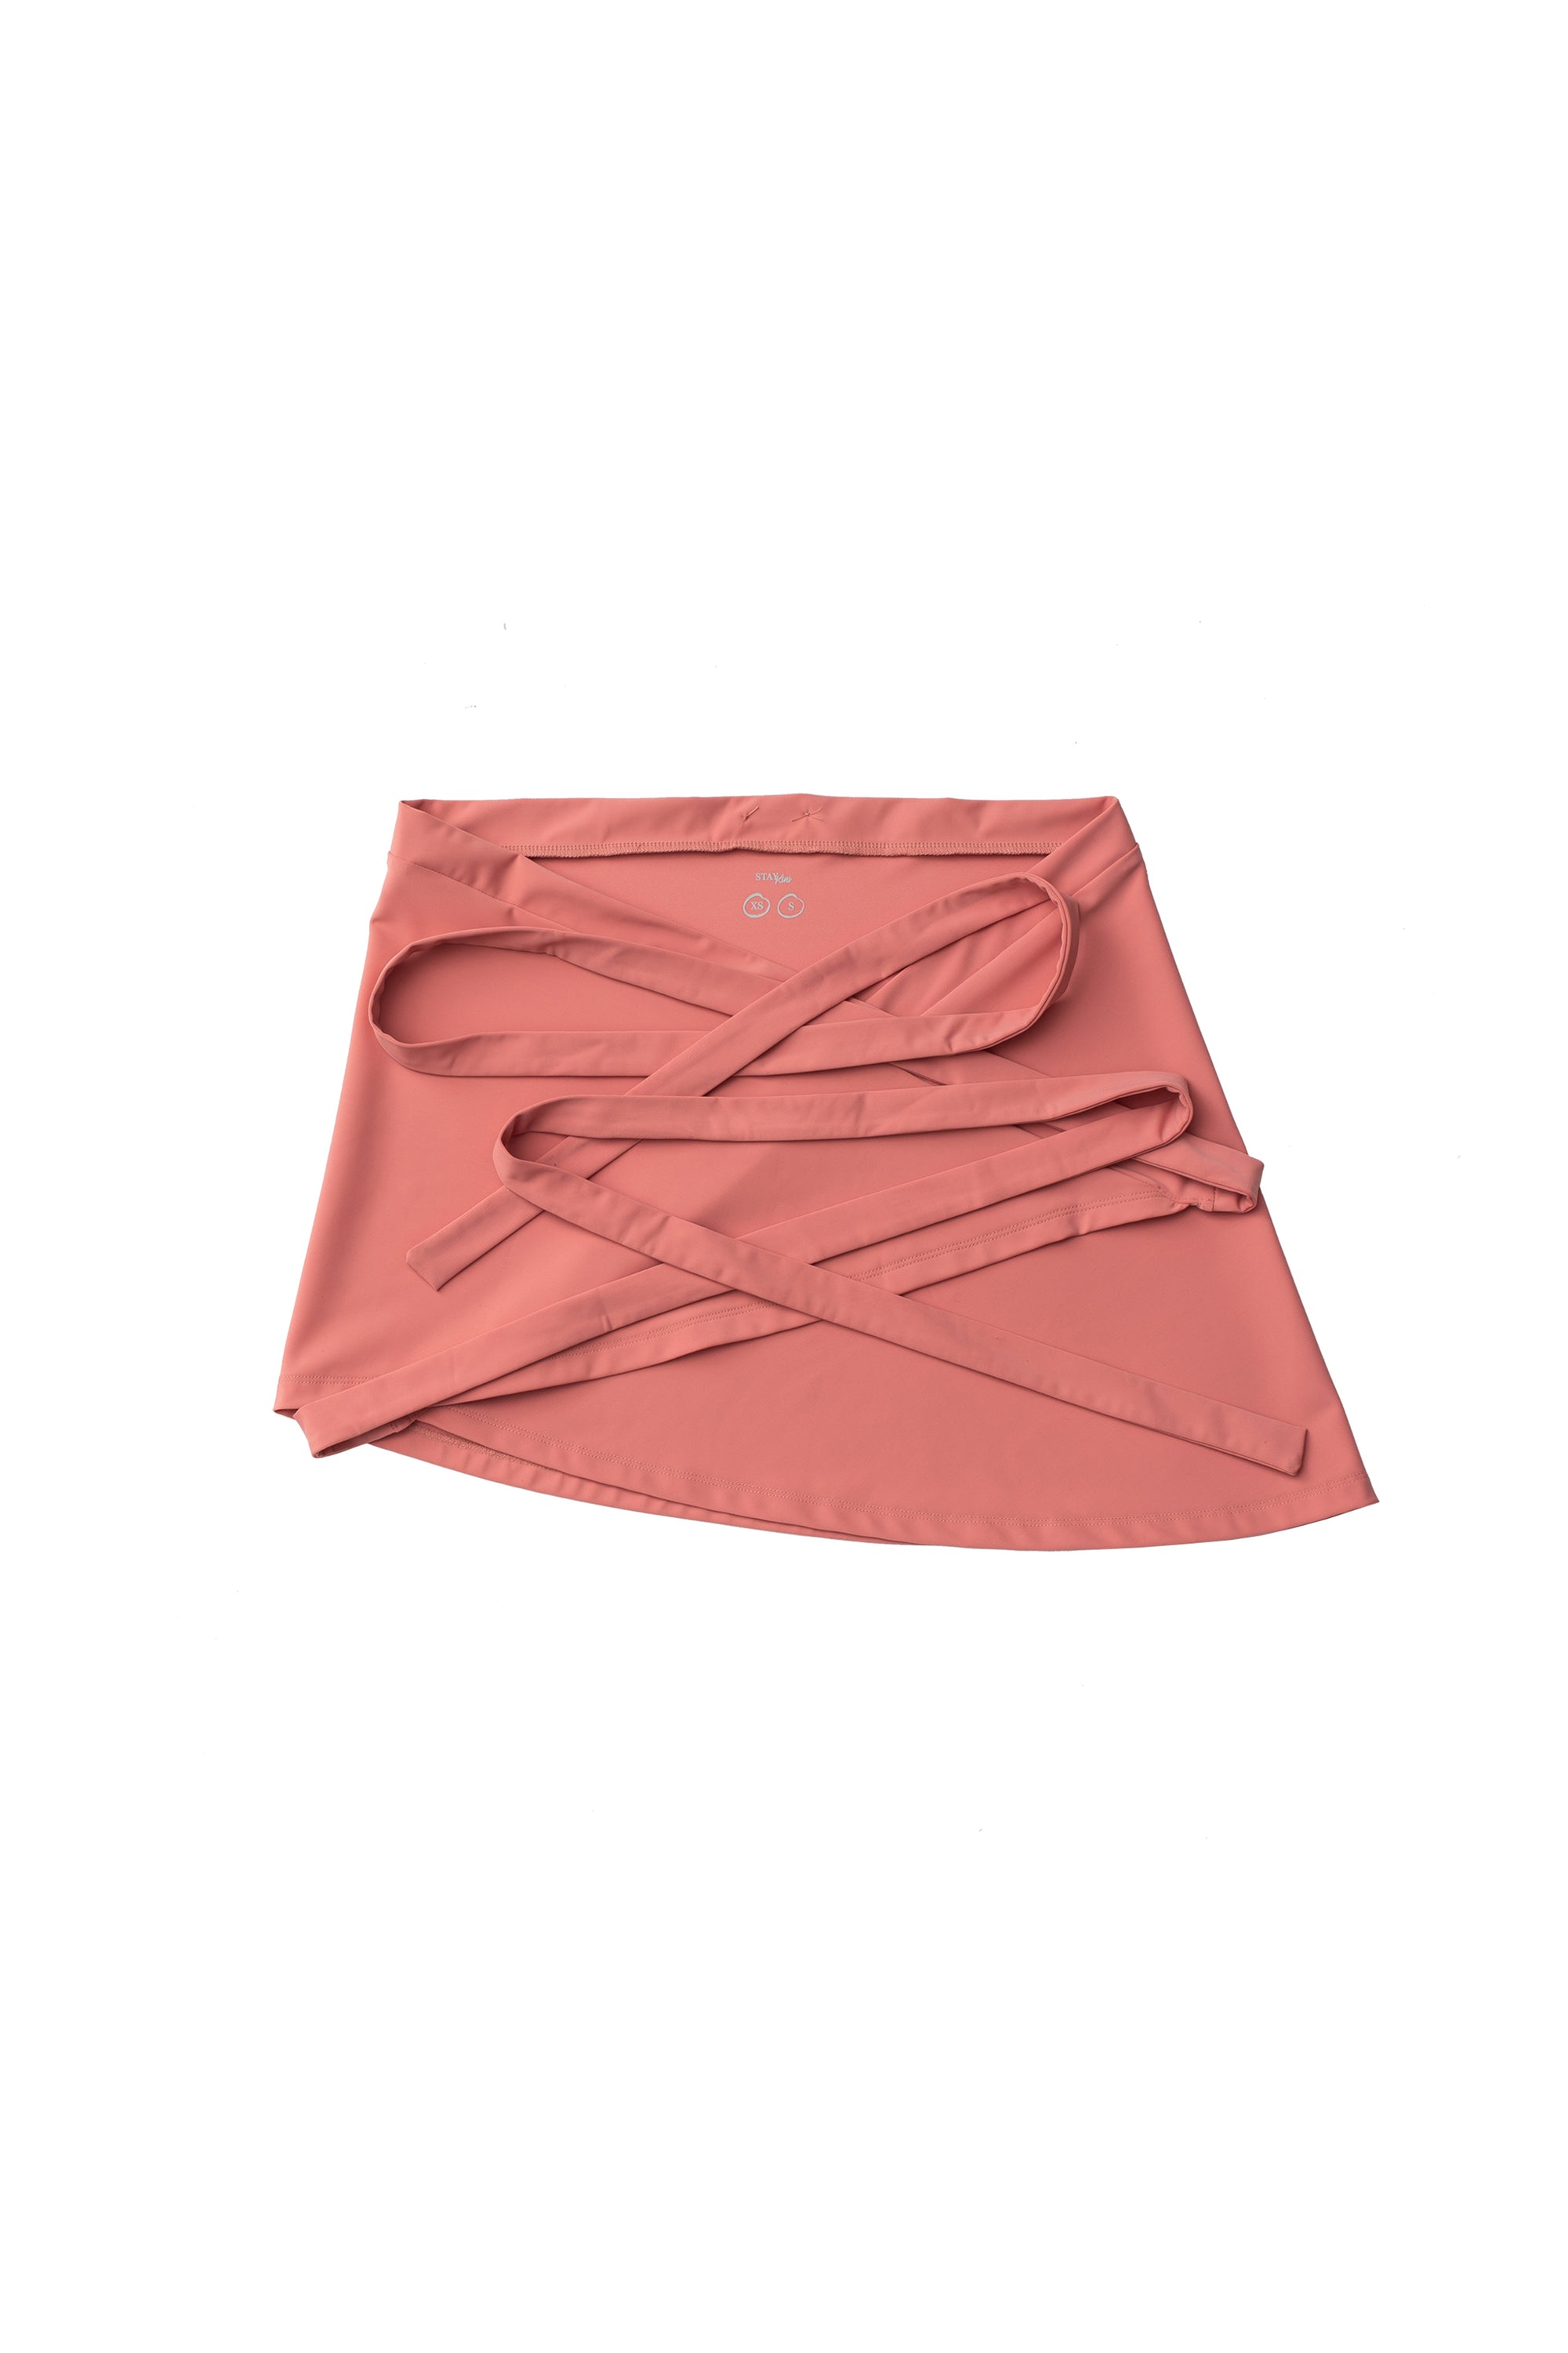 STAYkini Wrap Skirt